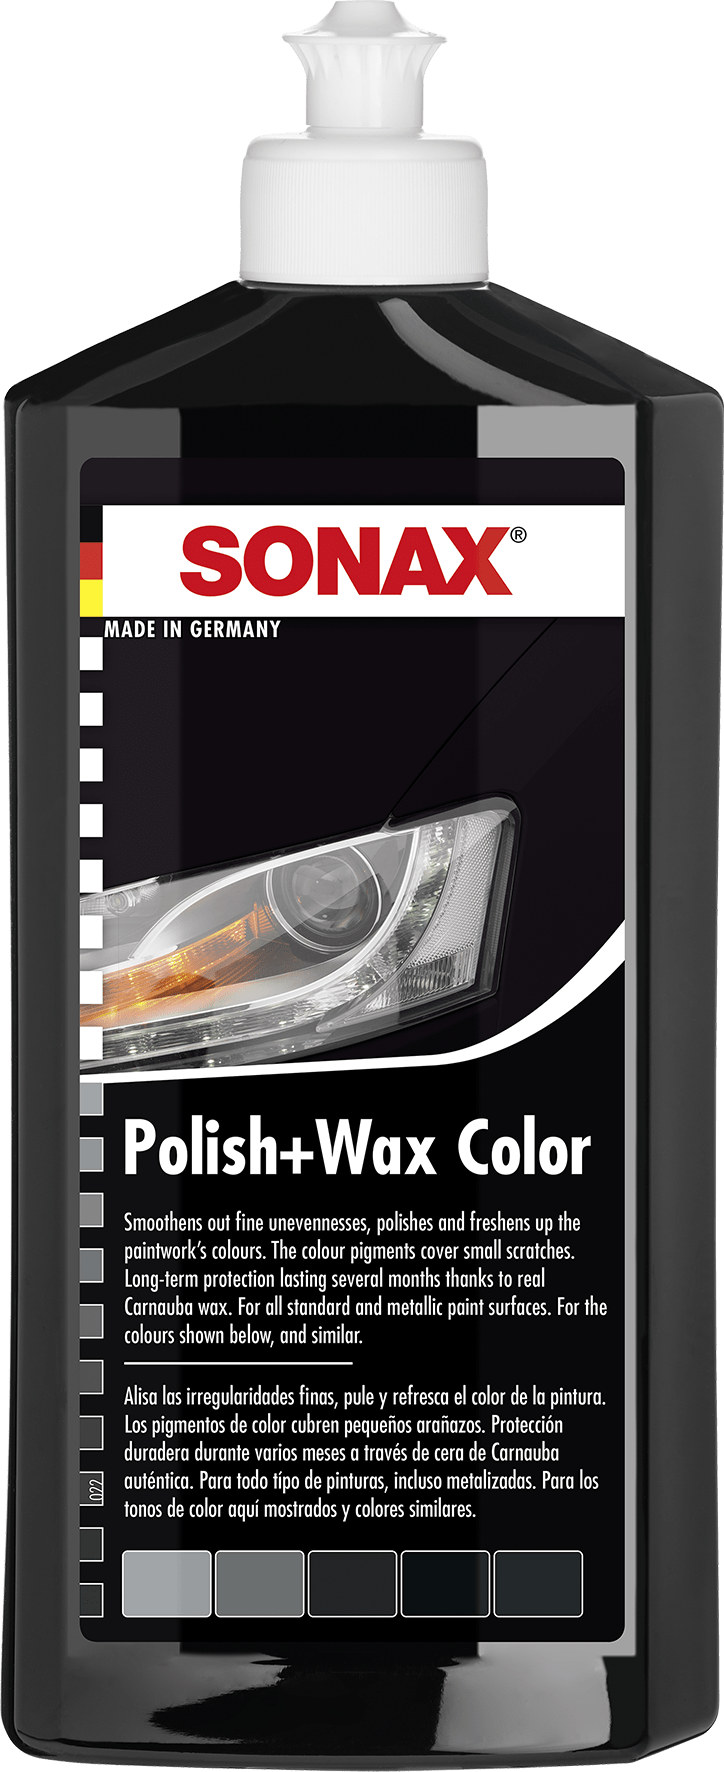 SONAX Juodos spalvos polirolis su vašku Polish&Wax, 250ml